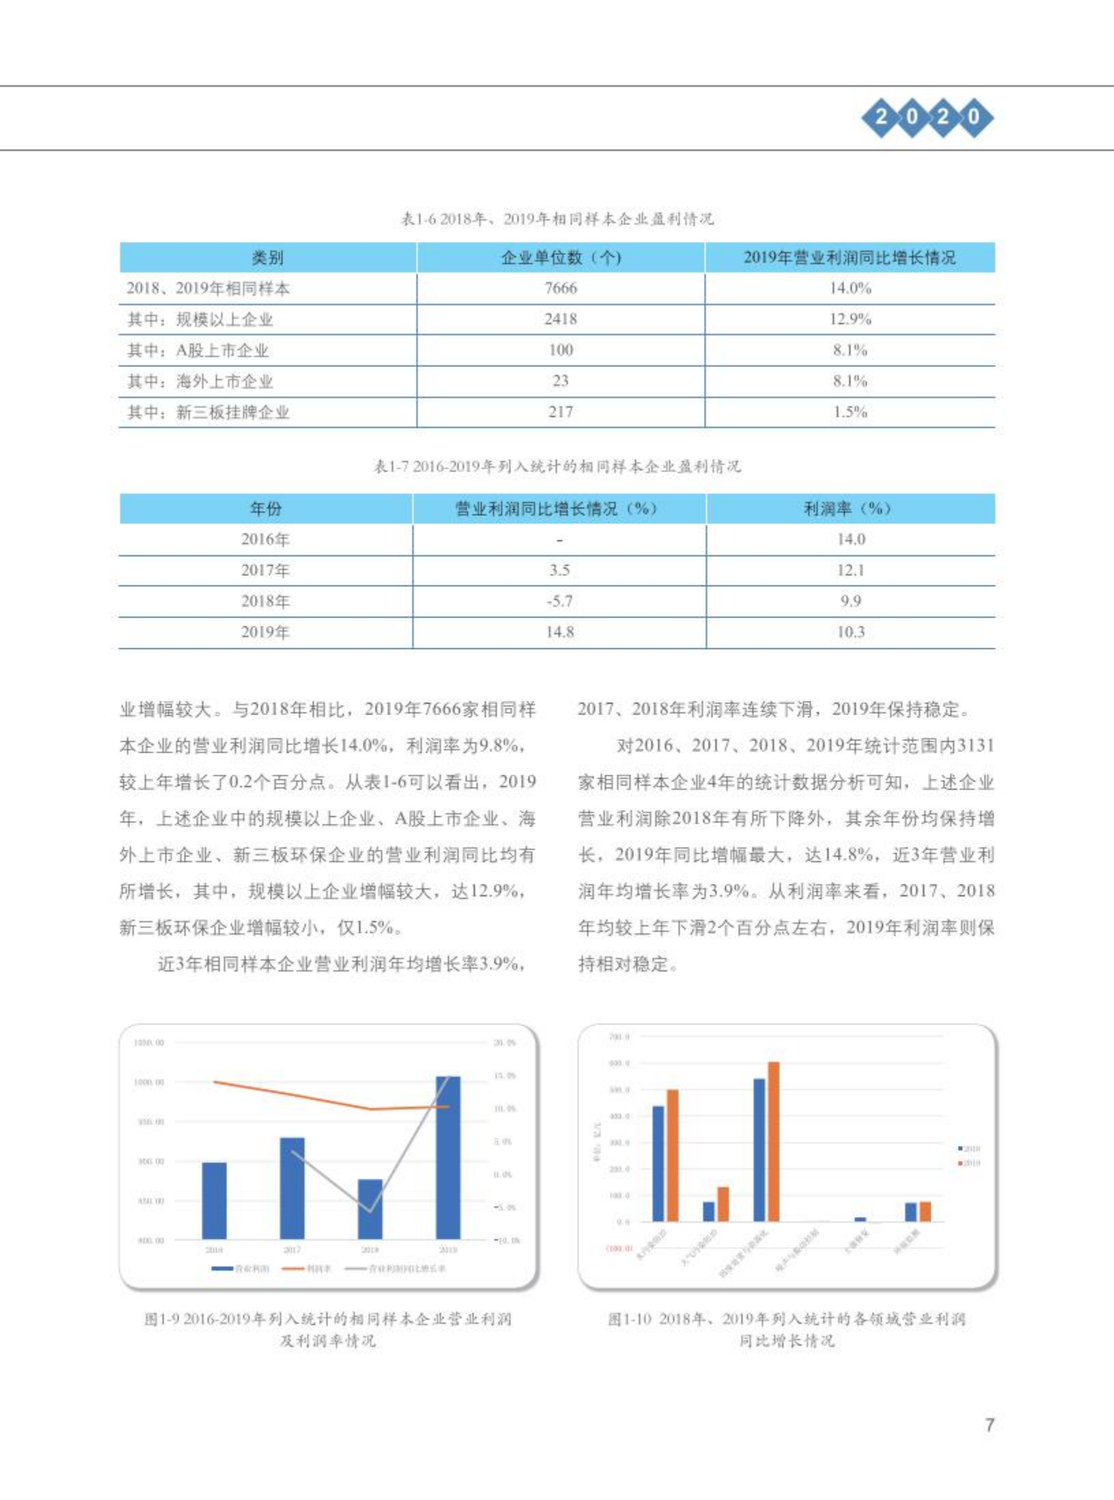 【2020】中国环保产业发展状况报告_08.png